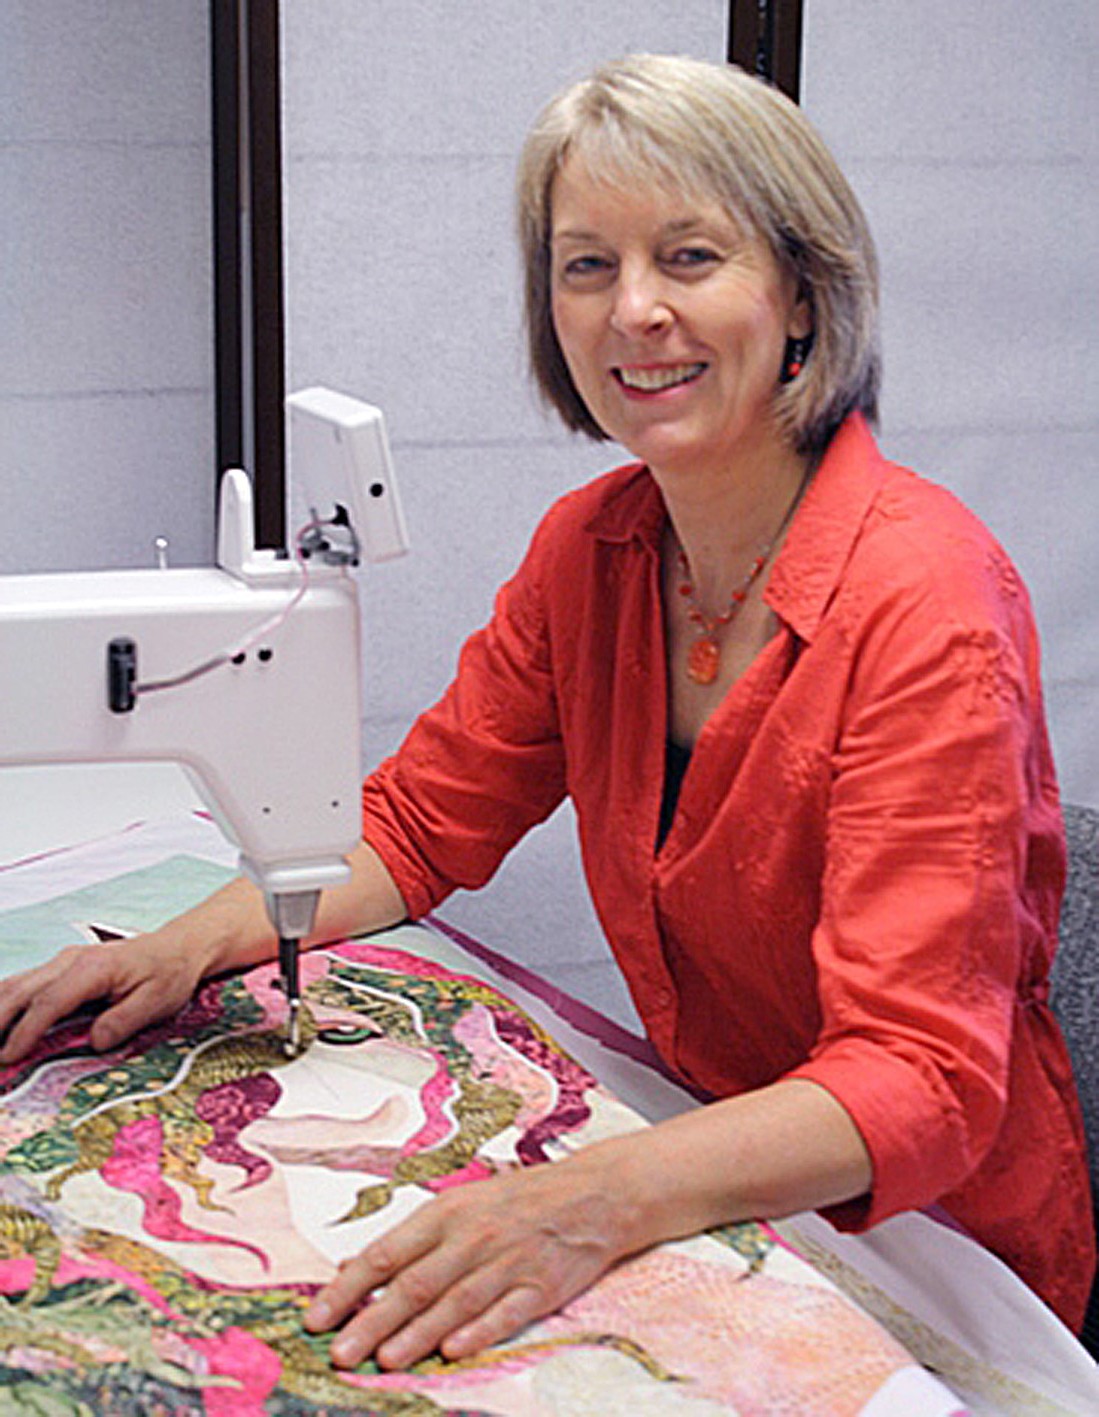 Lise Belanger,artist and designer